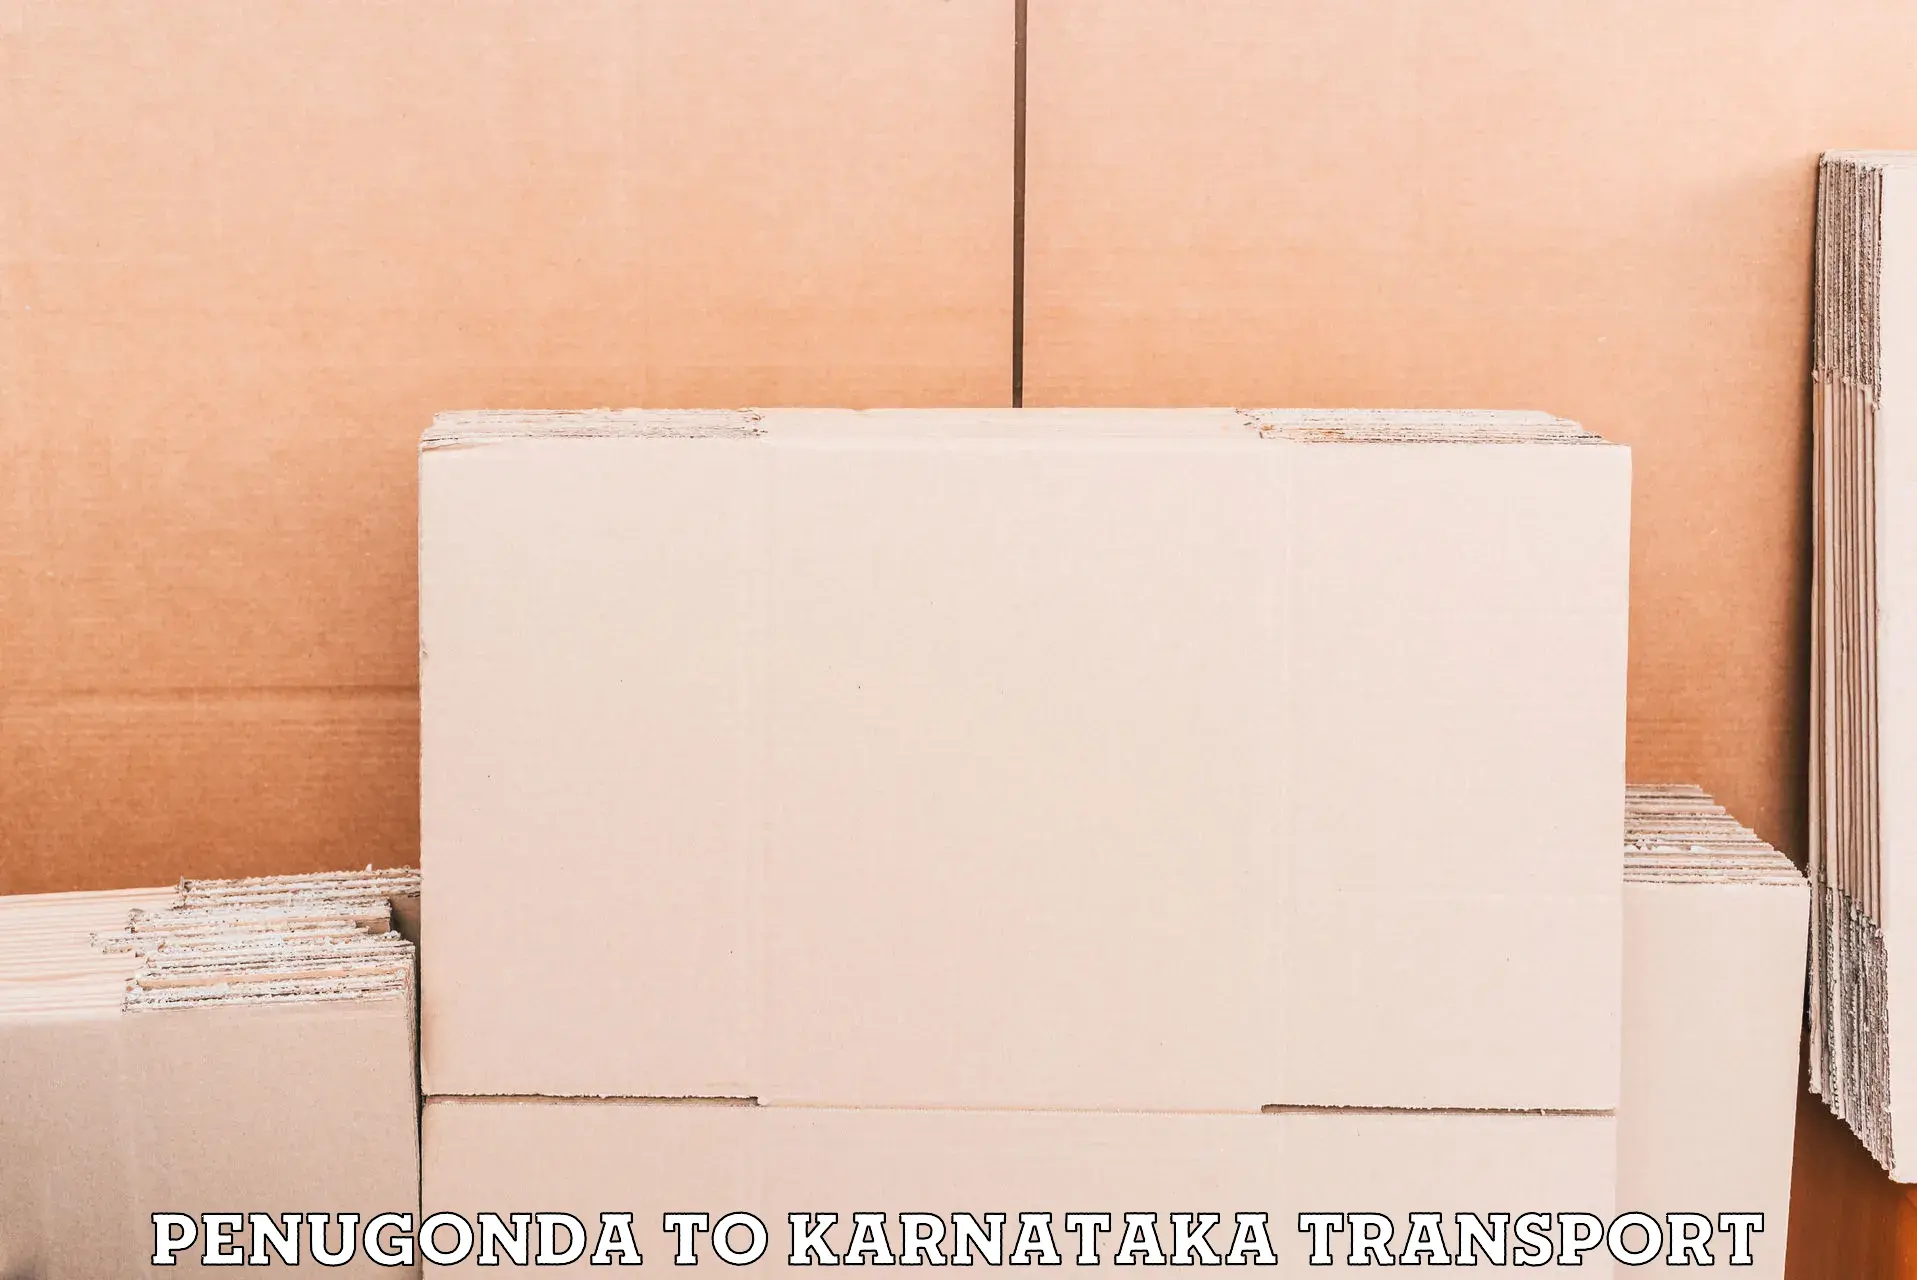 India truck logistics services Penugonda to Badami